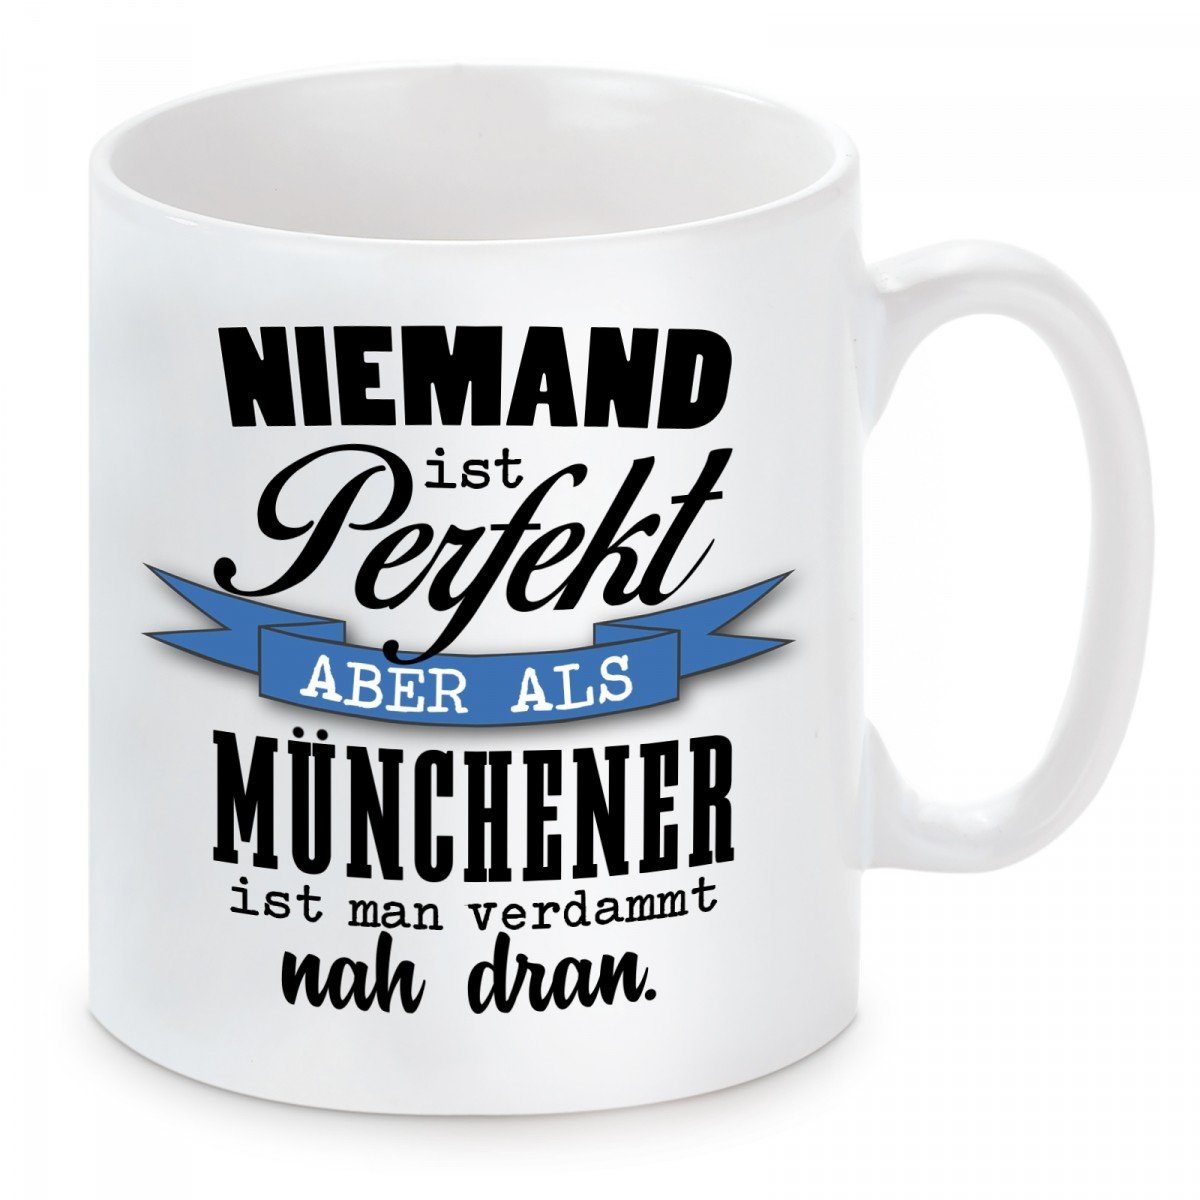 Herzbotschaft Tasse Kaffeebecher mit Niemand Keramik, aber Kaffeetasse mikrowellengeeignet und perfekt Münchener, spülmaschinenfest als Motiv ist